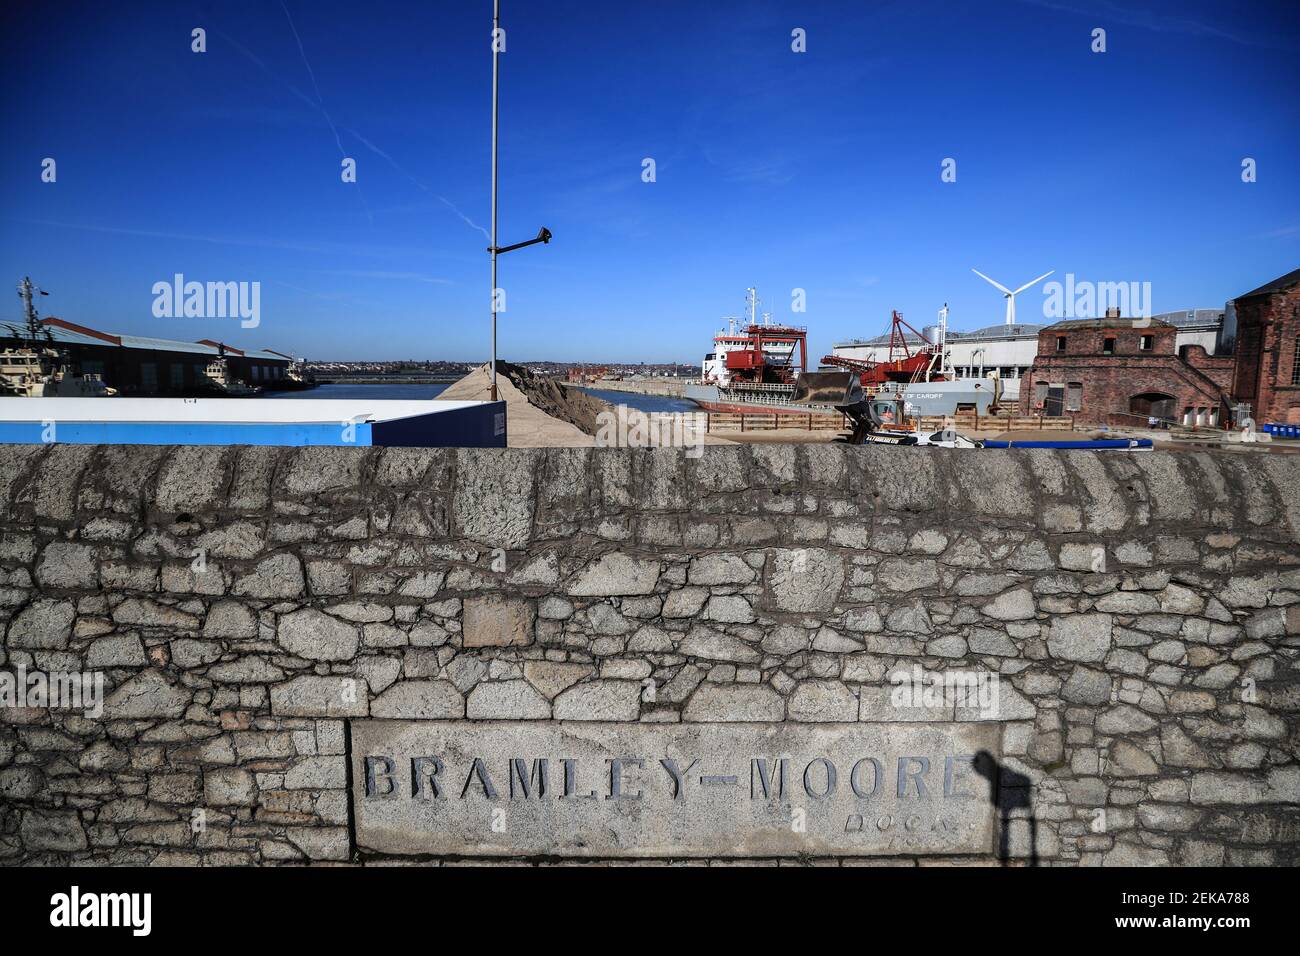 Photo du dossier datée du 24-03-2017 d'UNE vue générale de Bramley Moore Dock à Liverpool. Date de publication : le mardi 23 février 2021. Banque D'Images